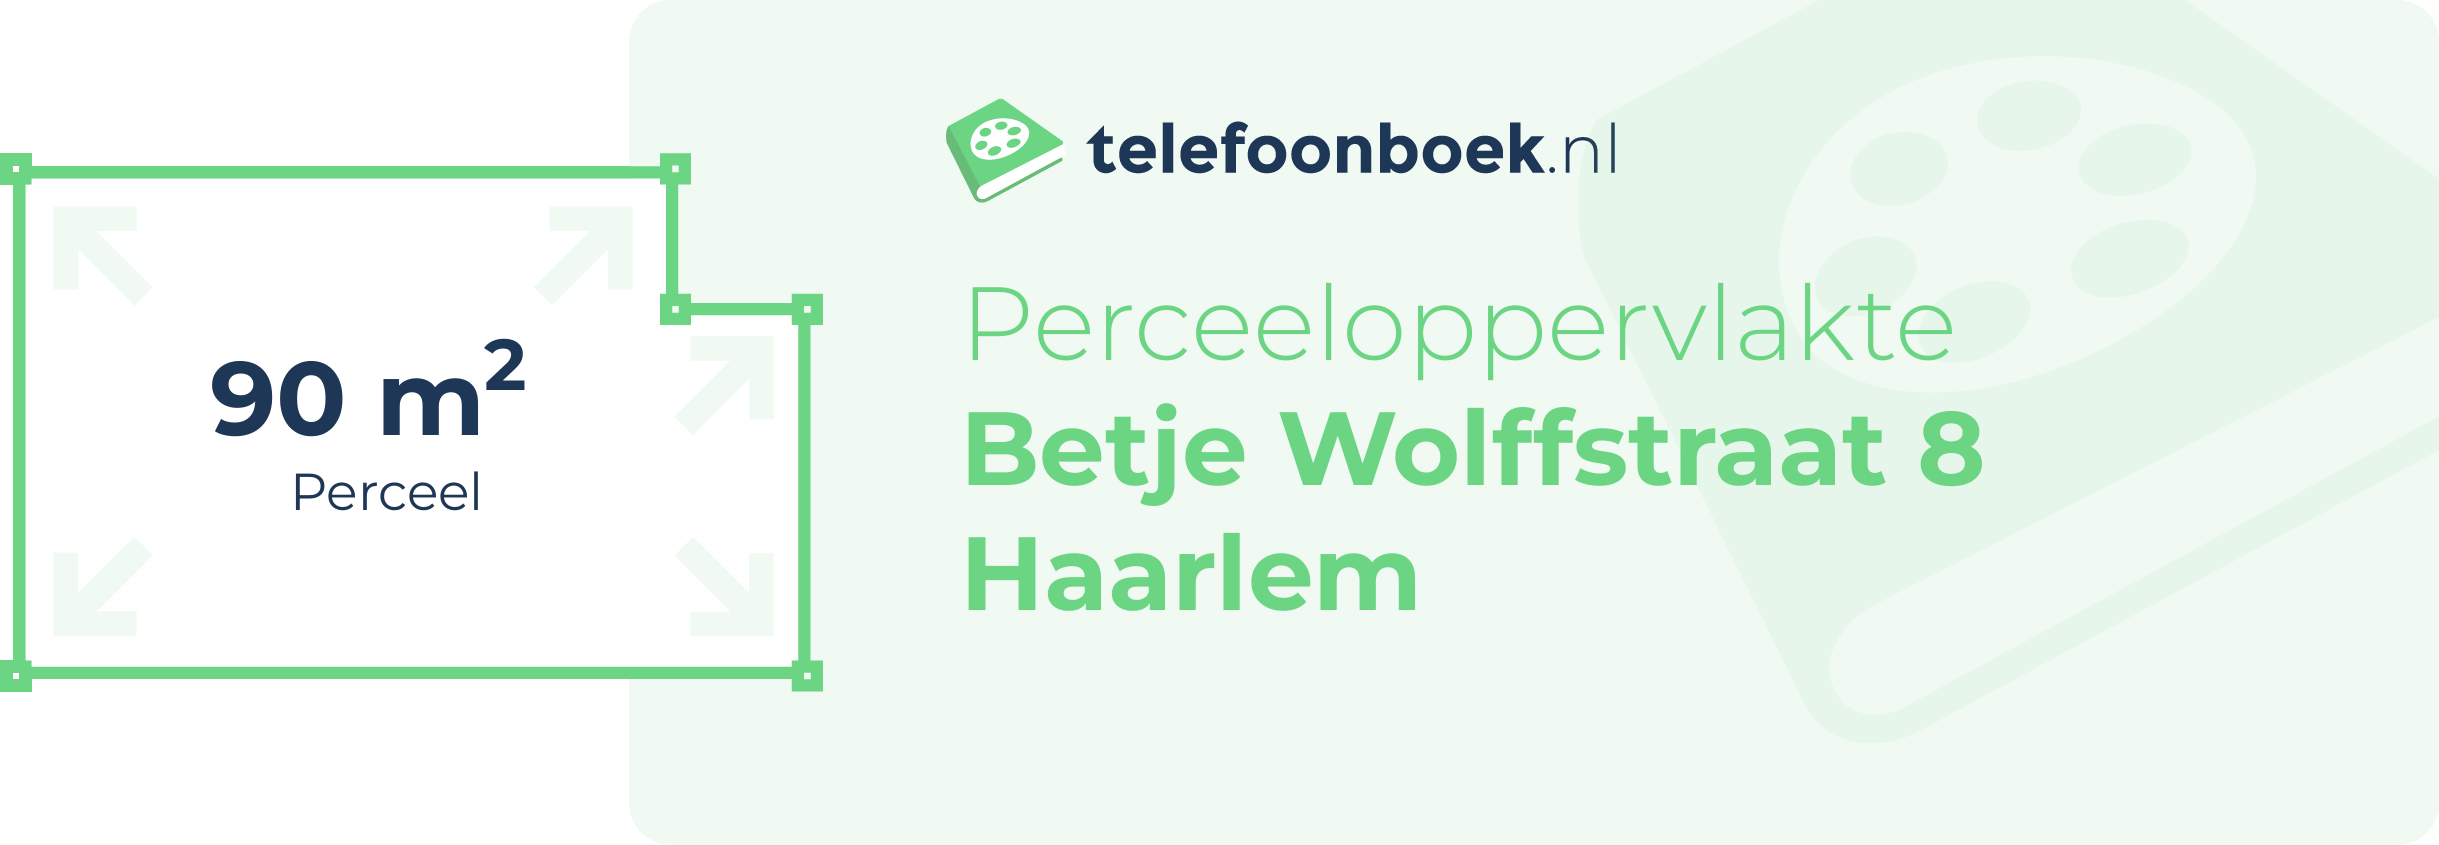 Perceeloppervlakte Betje Wolffstraat 8 Haarlem